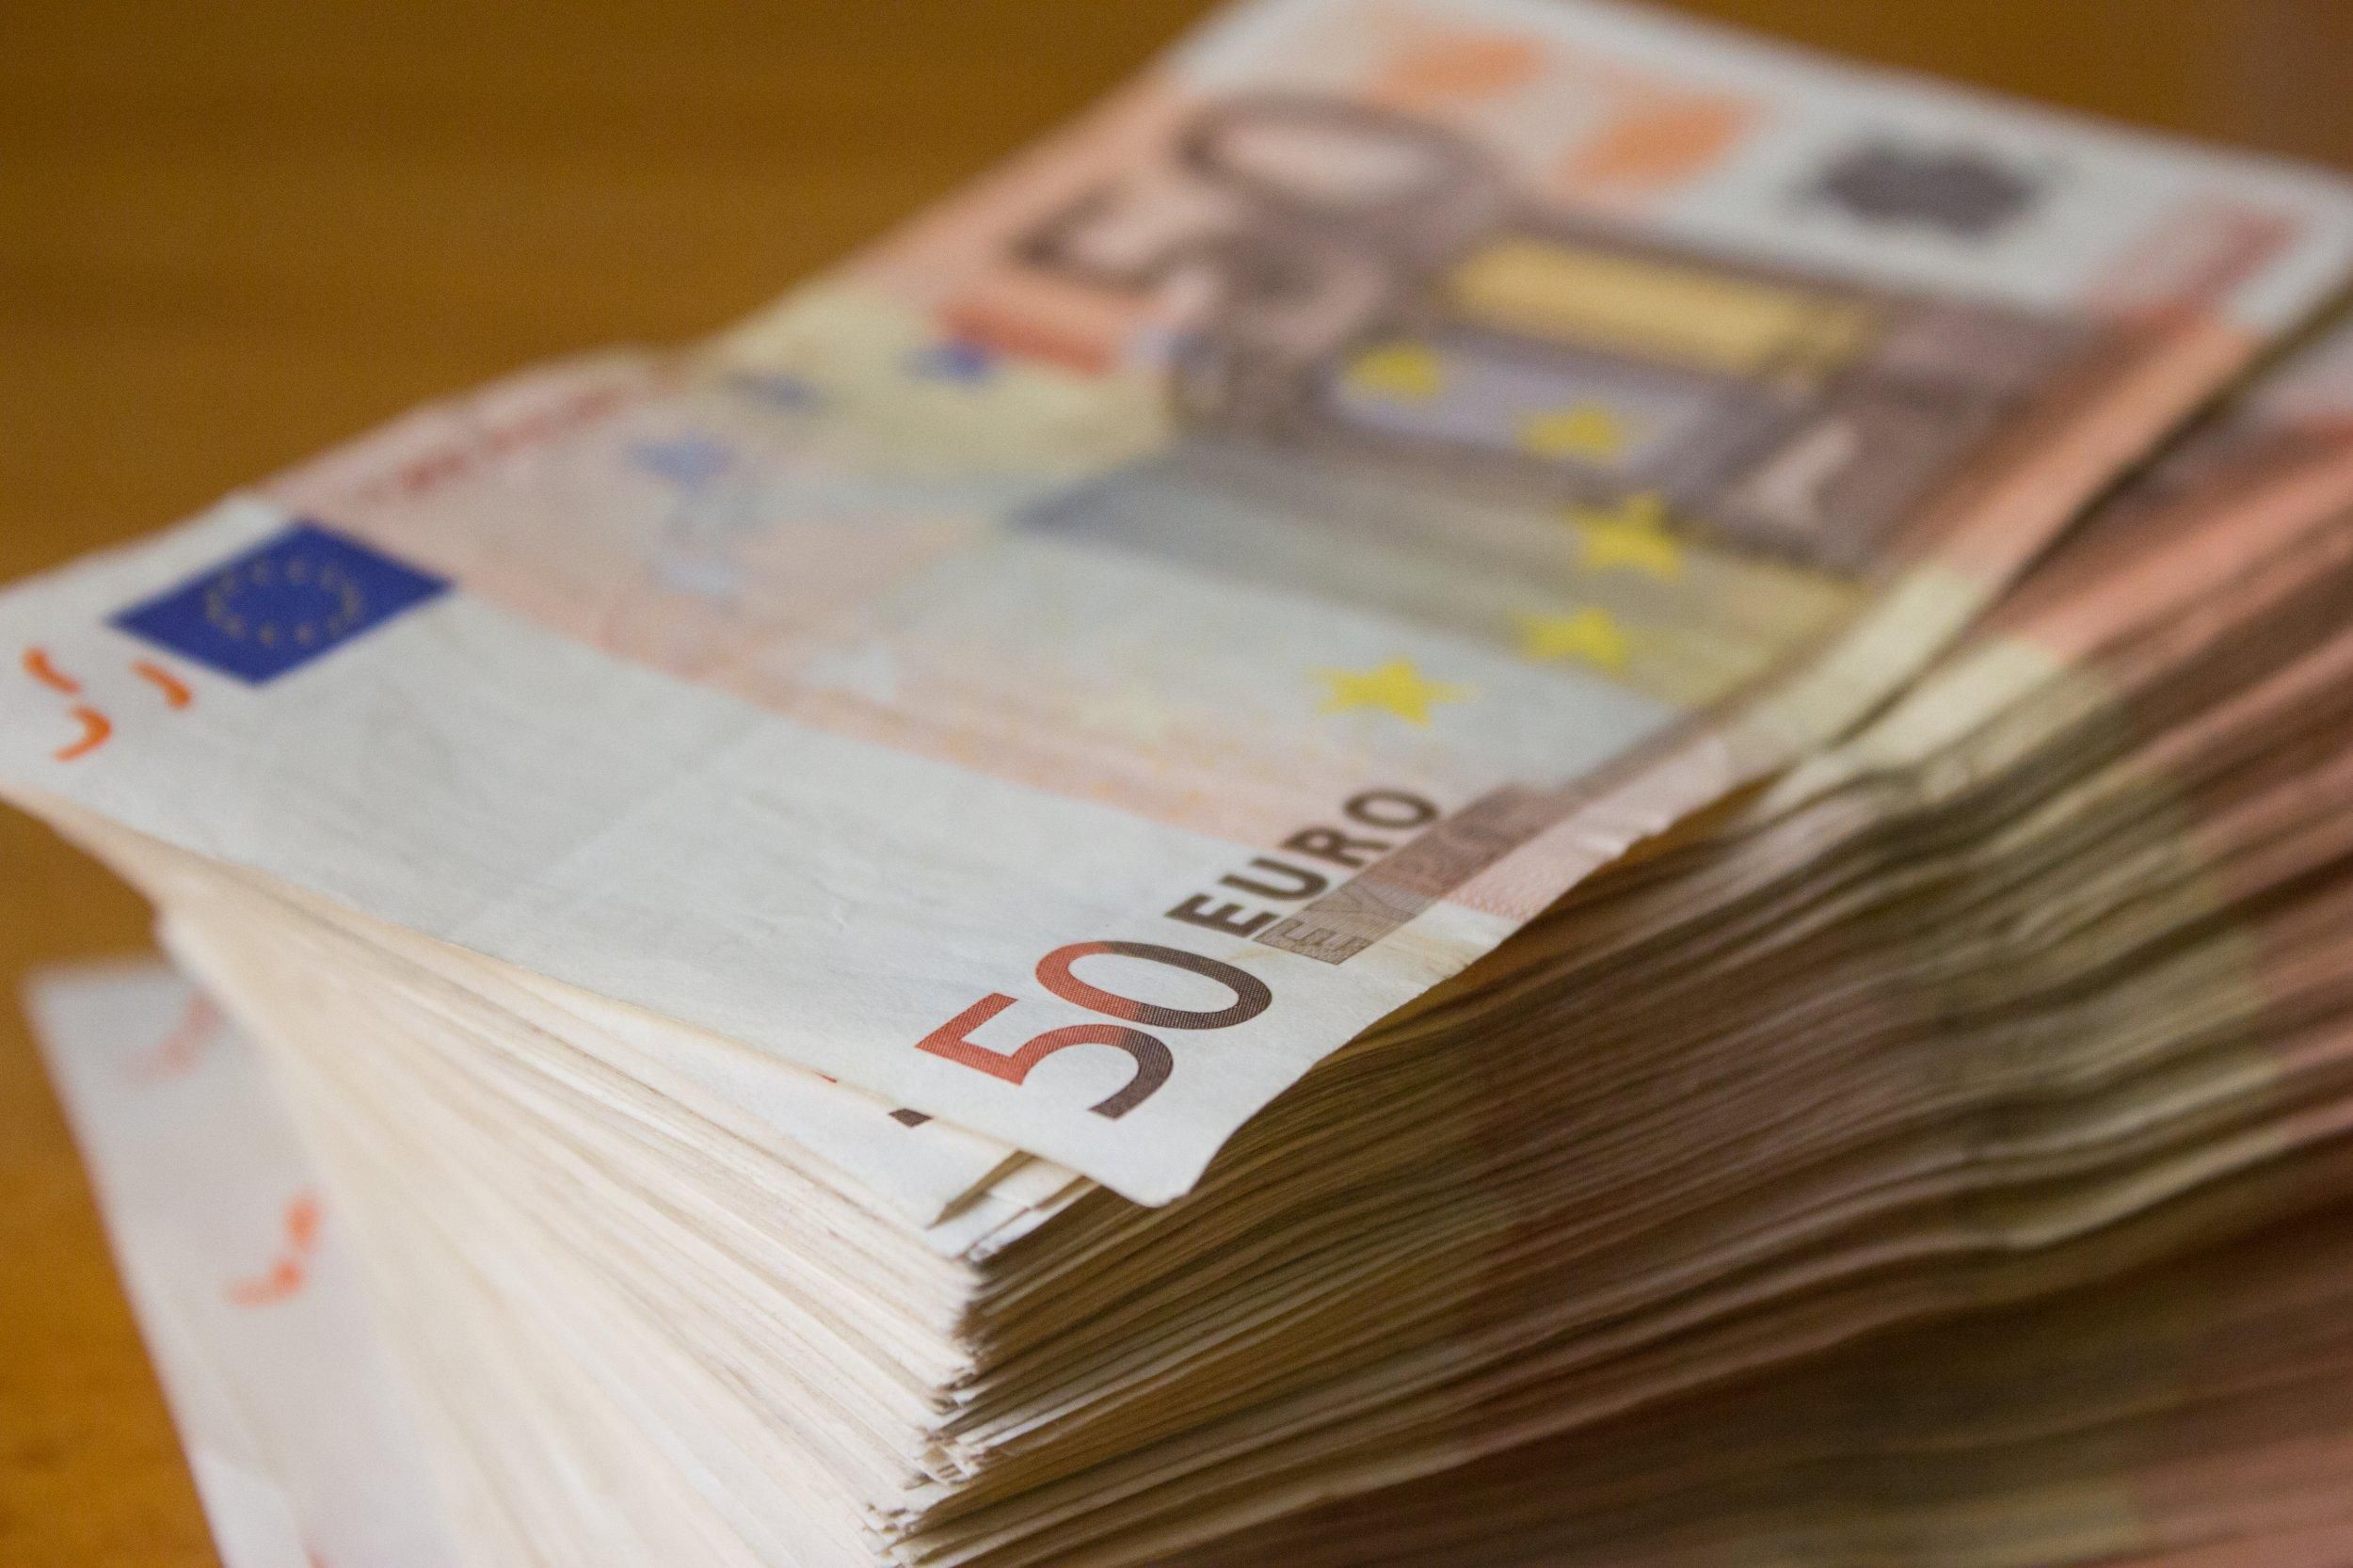 Почти 27 тысяч евро: суд конфисковал у мужчины незадекларированную валюту